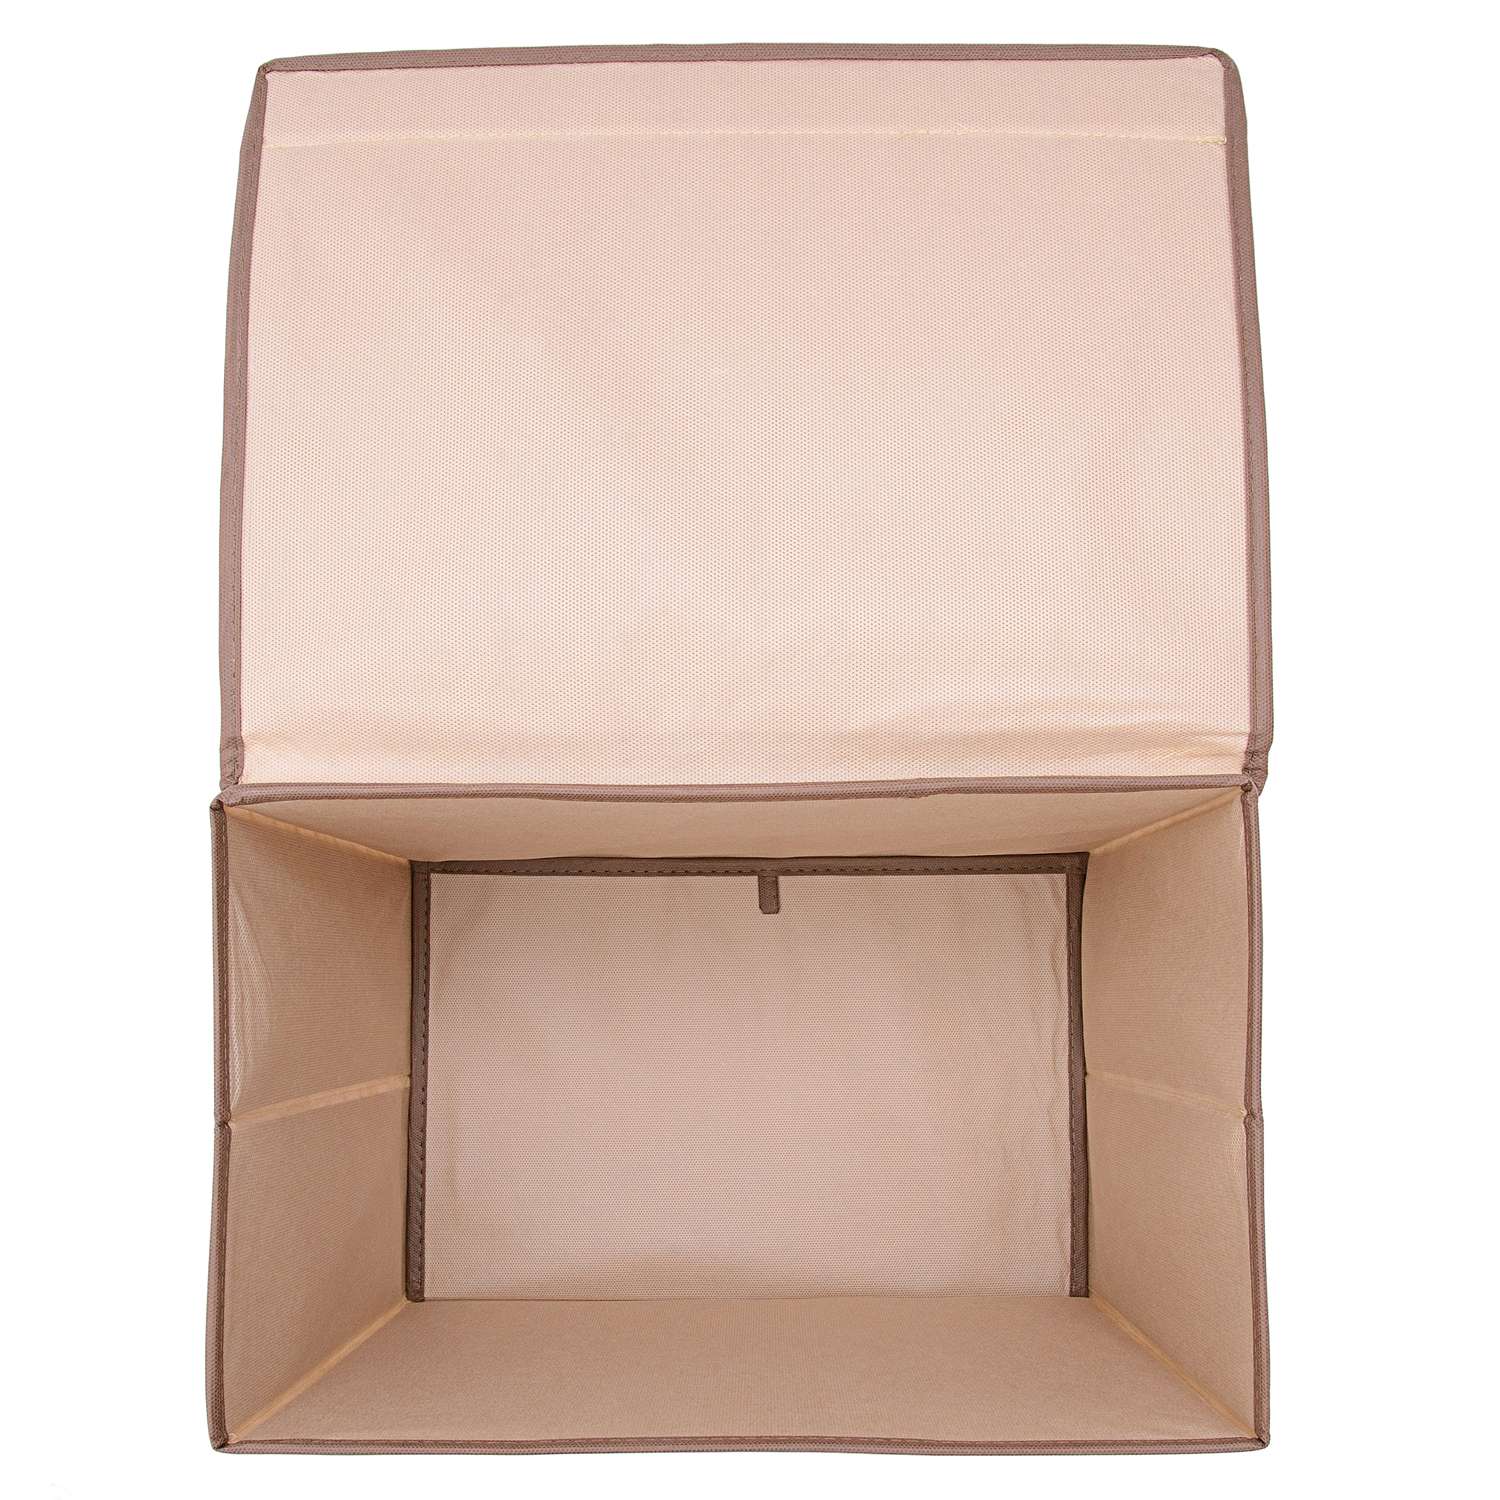 Коробка Homsu для хранения вещей с крышкой 38х25х30 см - фото 11